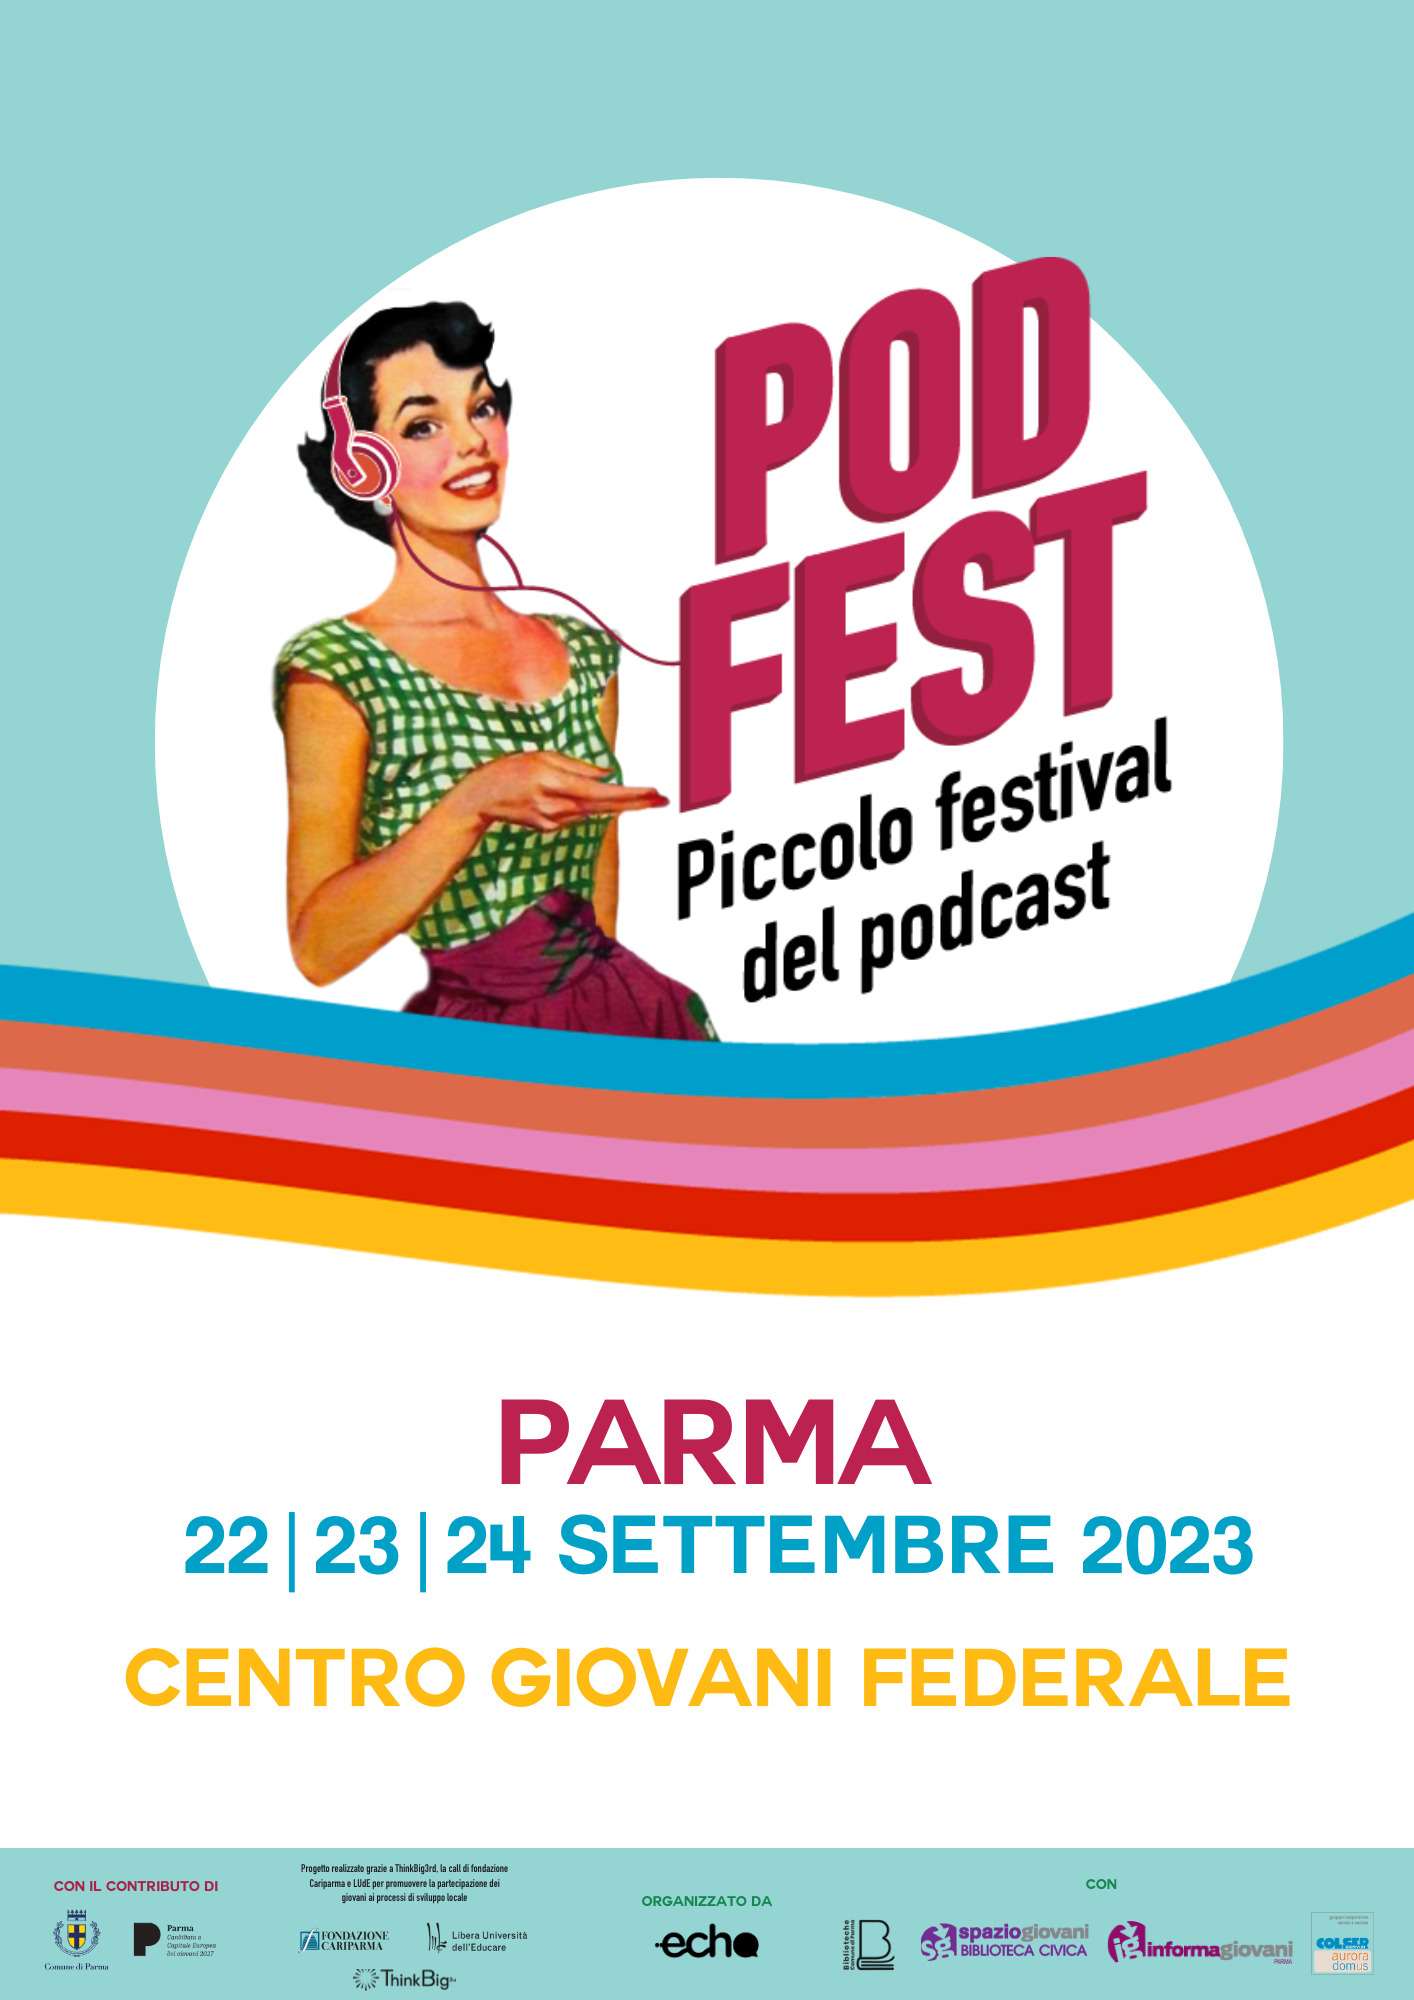 PodFest “Piccolo festival del podcast” II Edizione a Parma